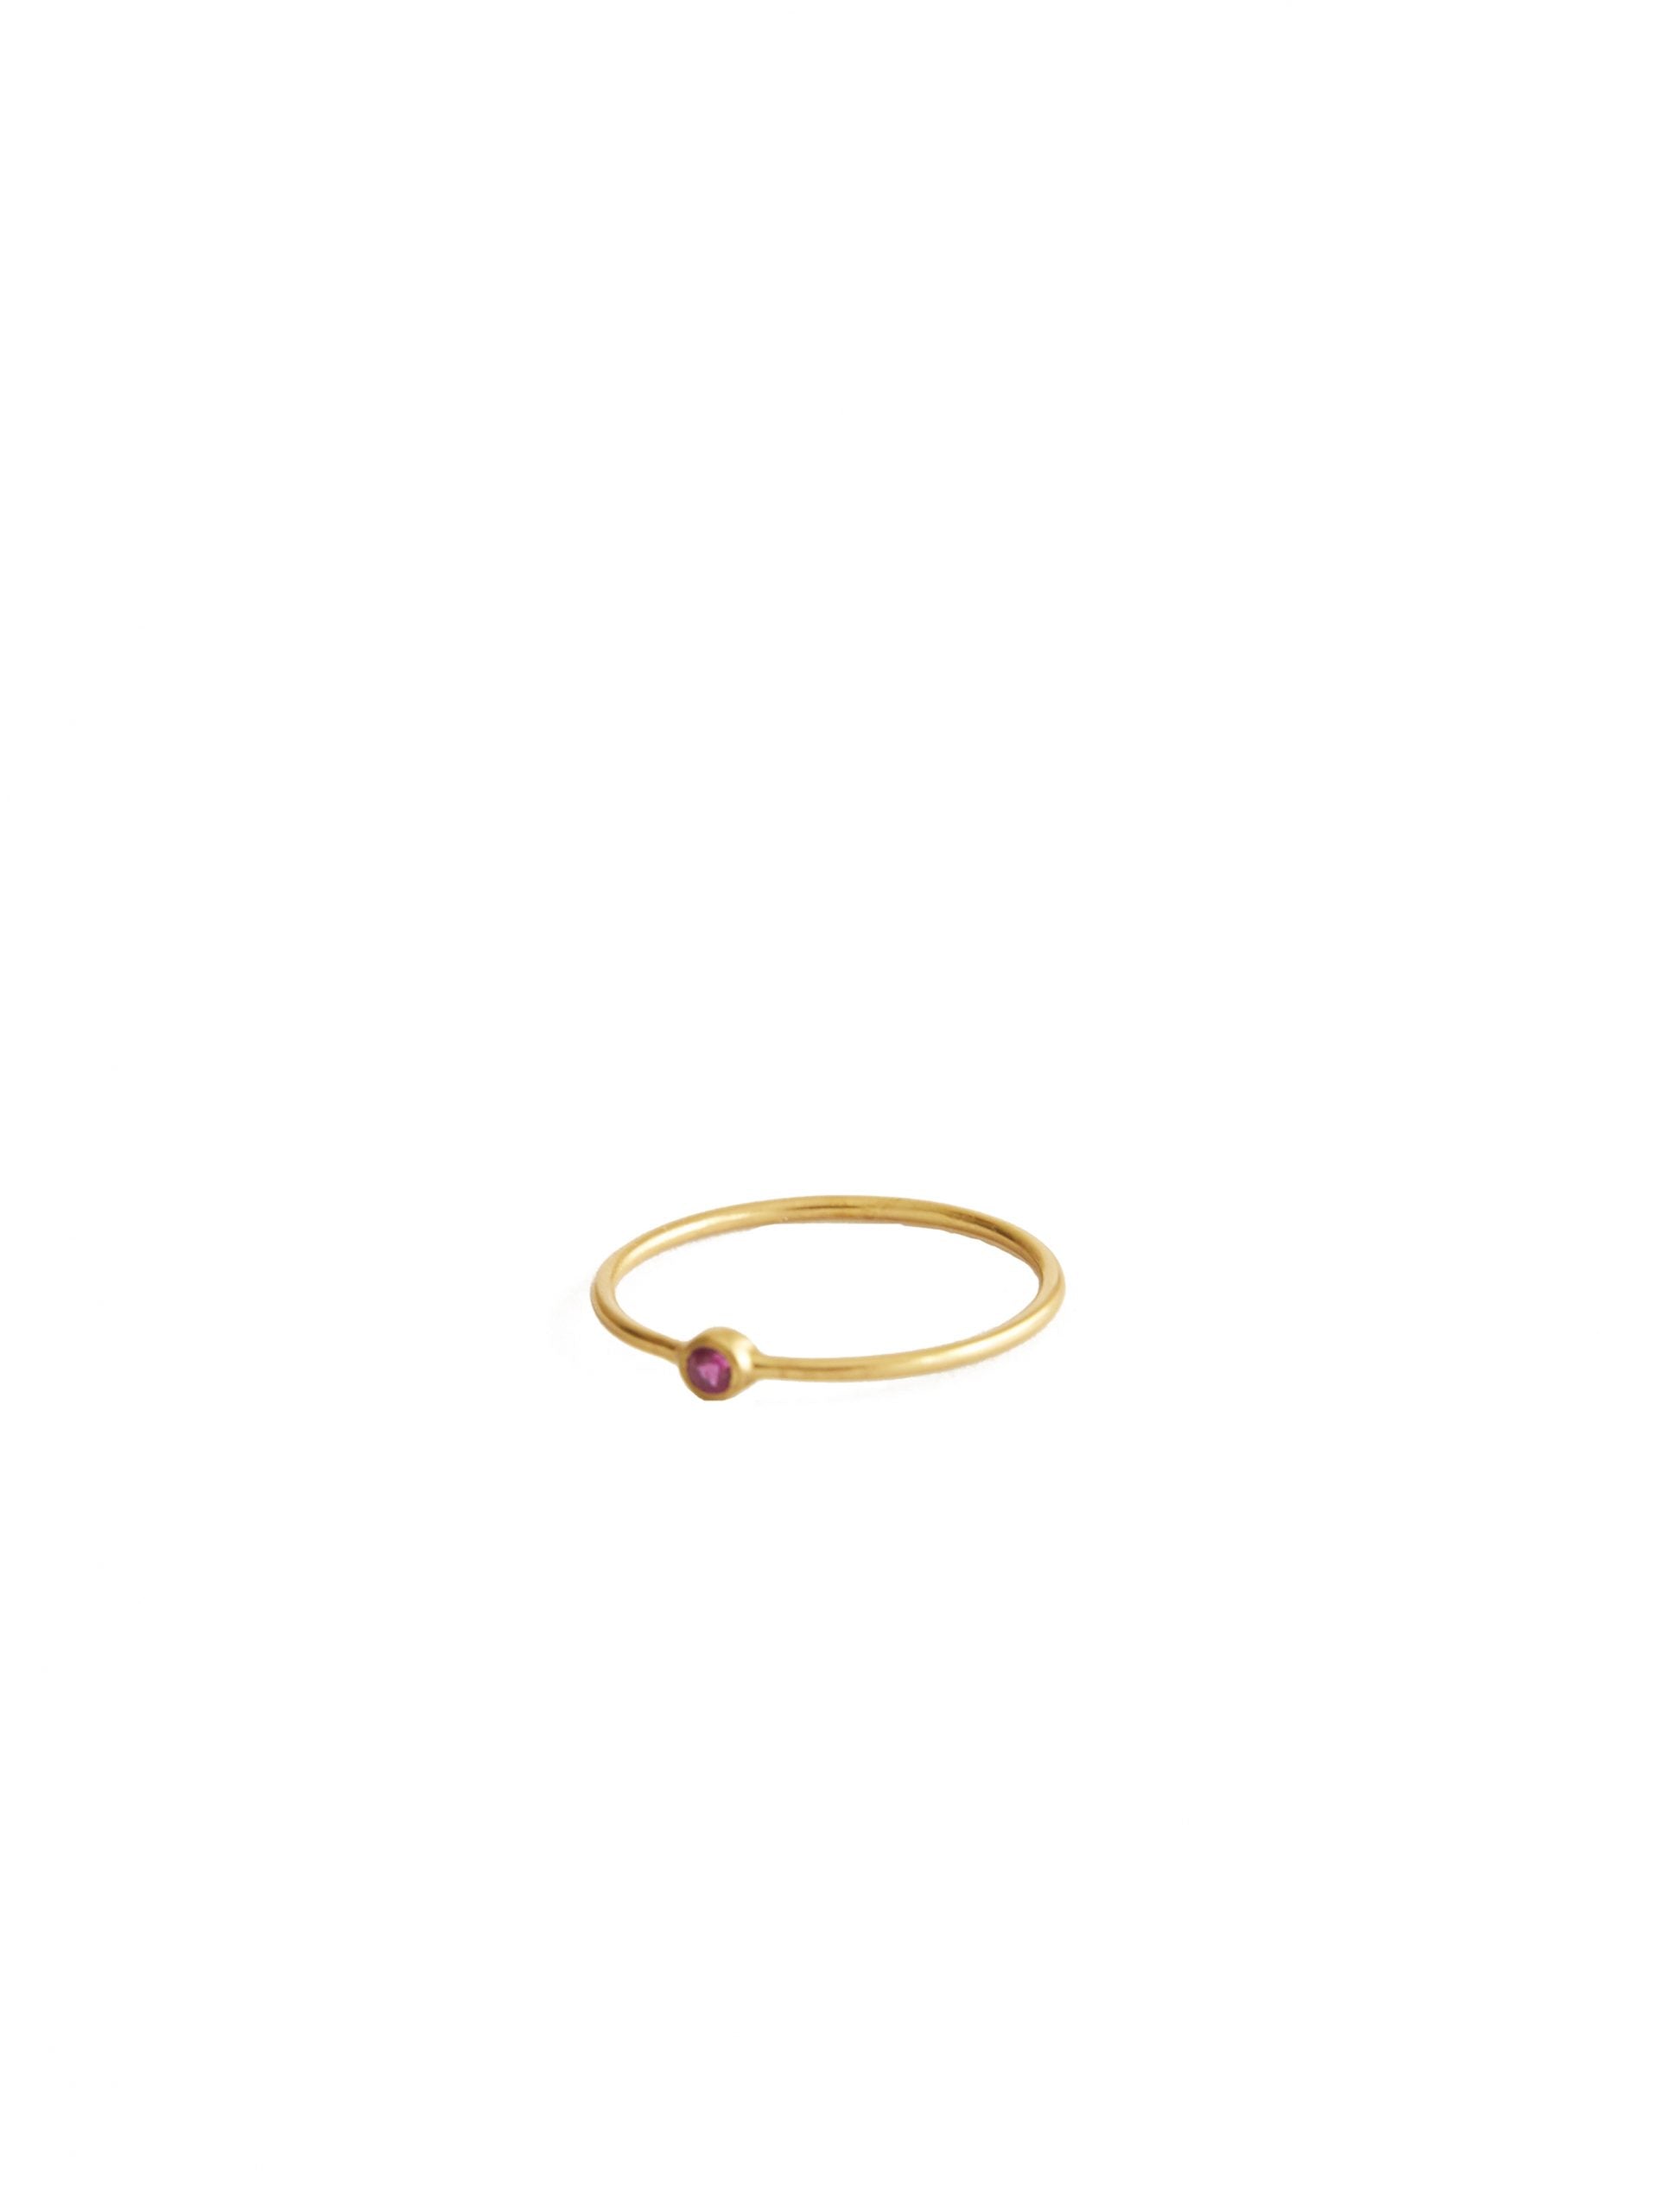 Petite Pierre Rose Ring Gold